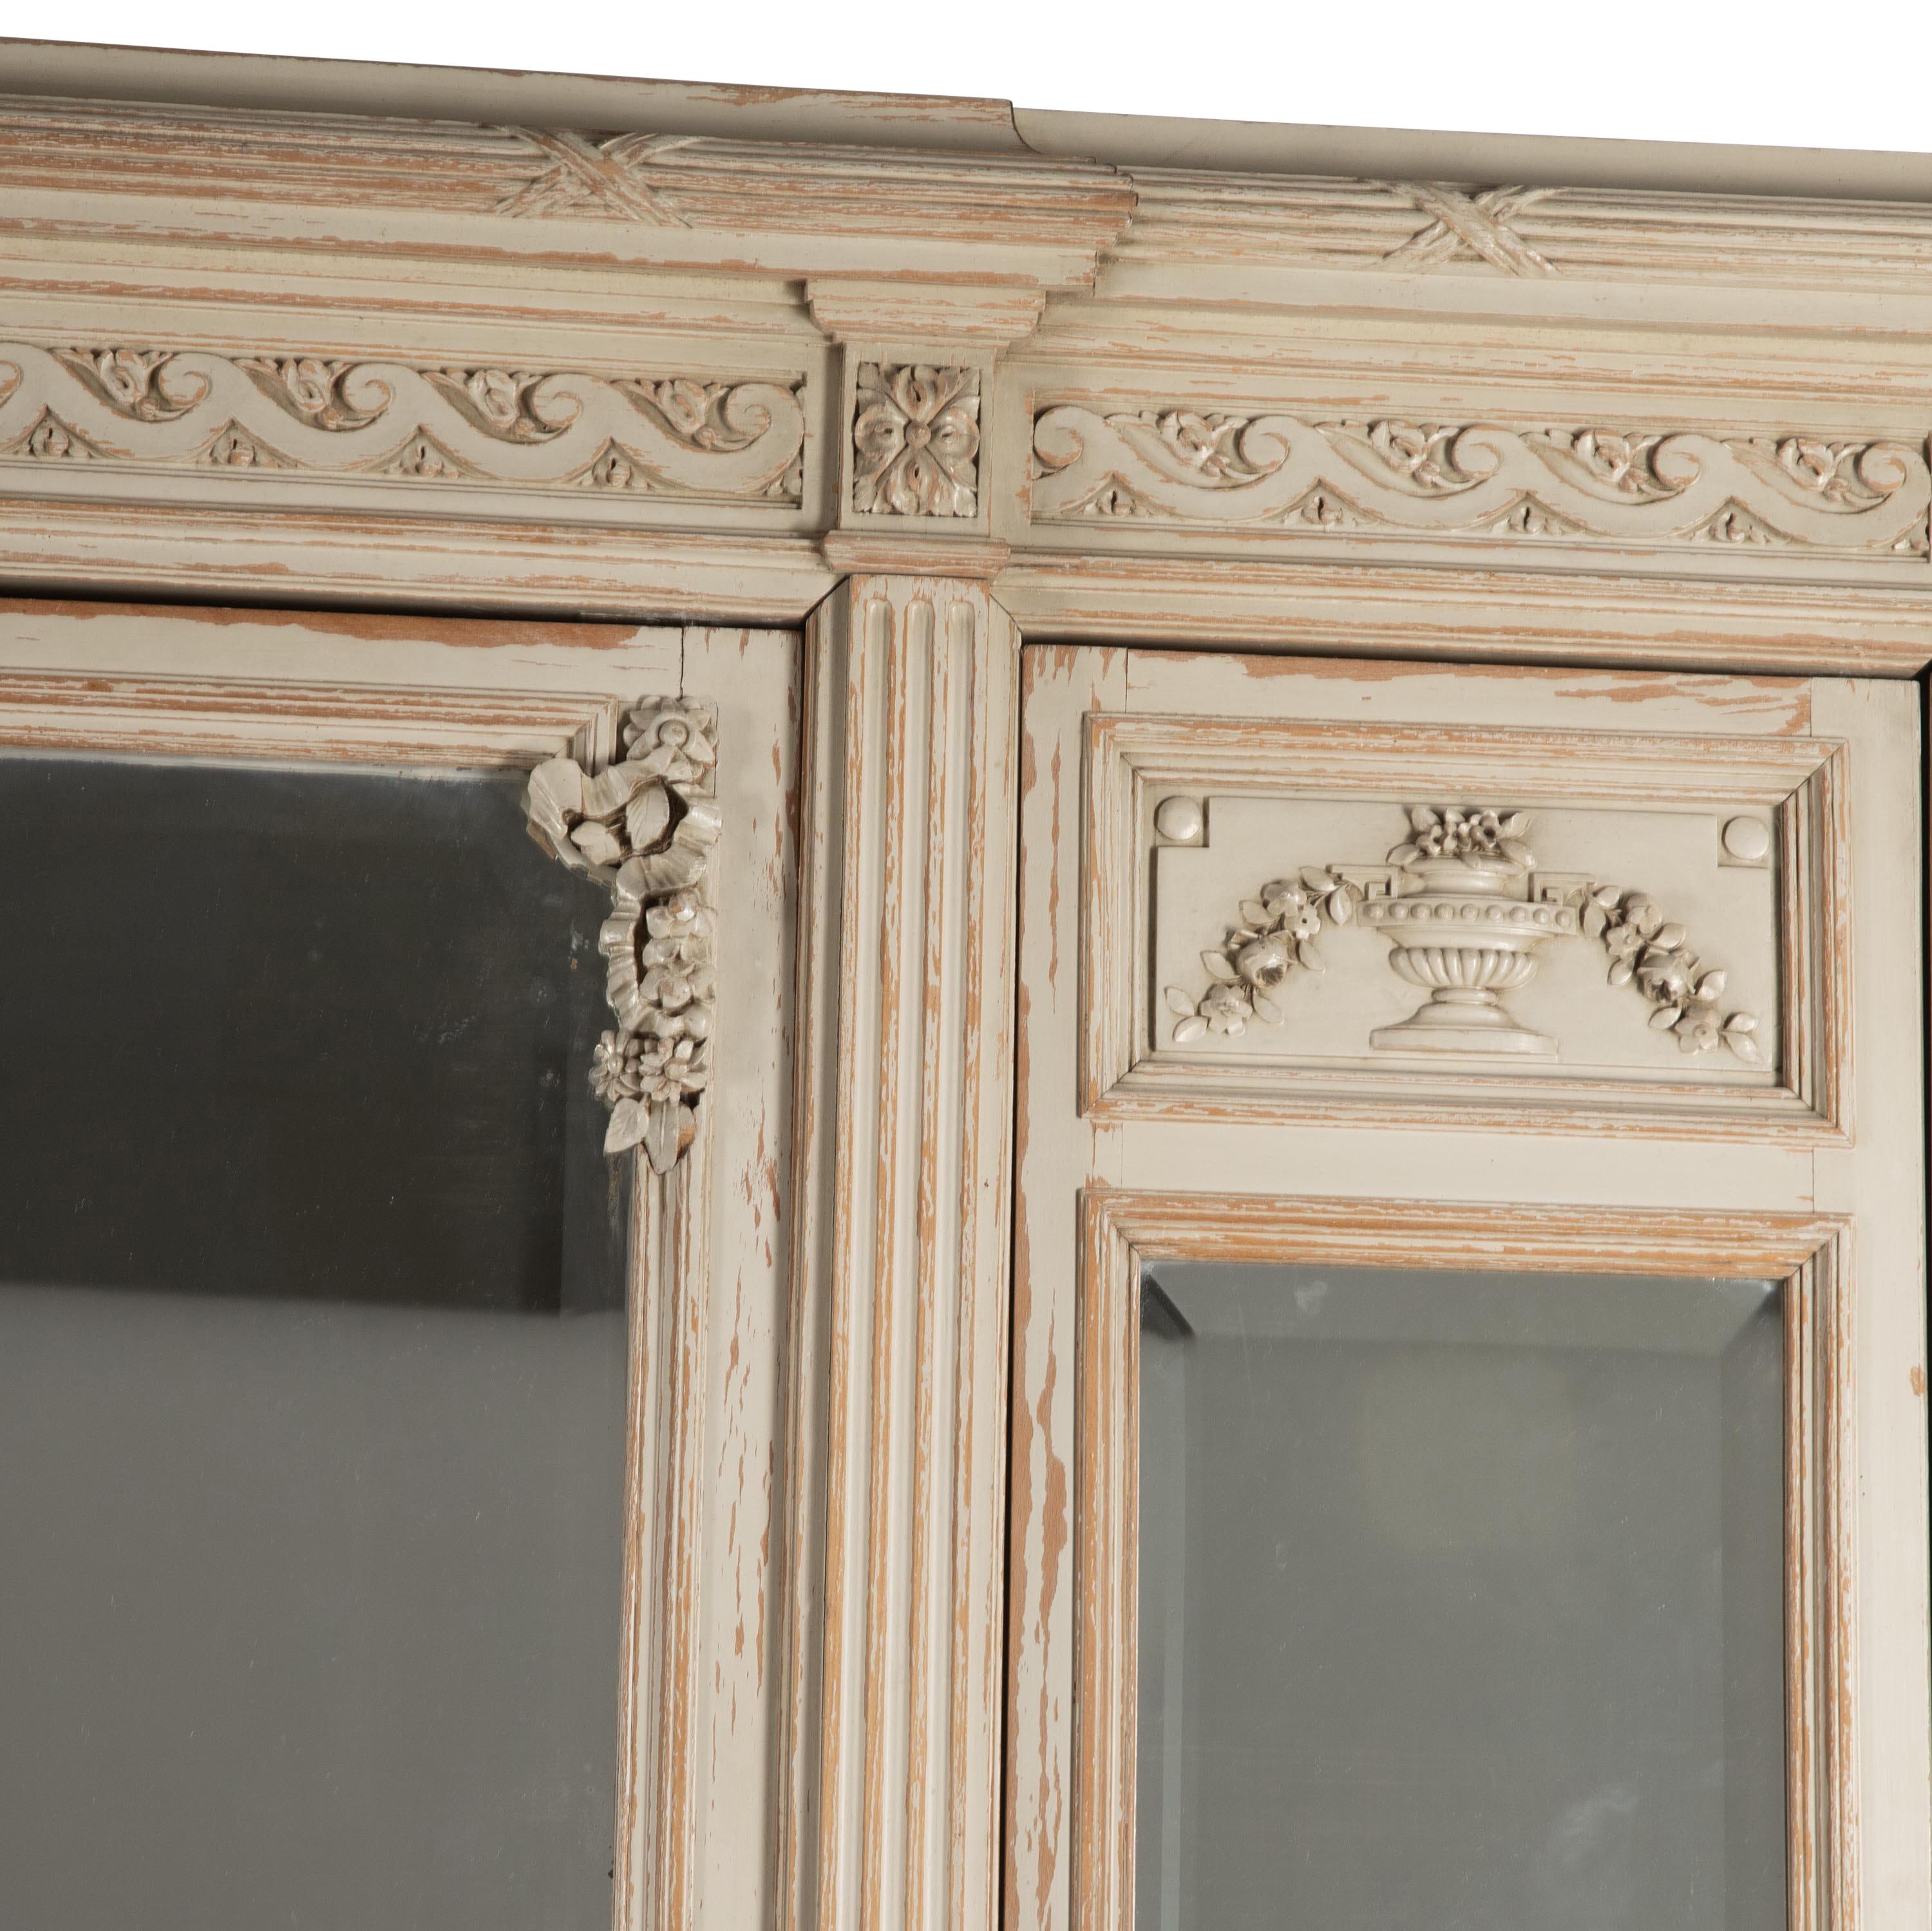 Französischer Schrank aus dem 19. Jahrhundert im Louis-XVI-Stil.
Mit dekorativem geschnitztem Giebel, zwei schmalen Seitentüren mit abgeschrägtem Spiegelglas, die zu Regalen führen.
In der Mitte befindet sich eine weitere größere Spiegeltür mit